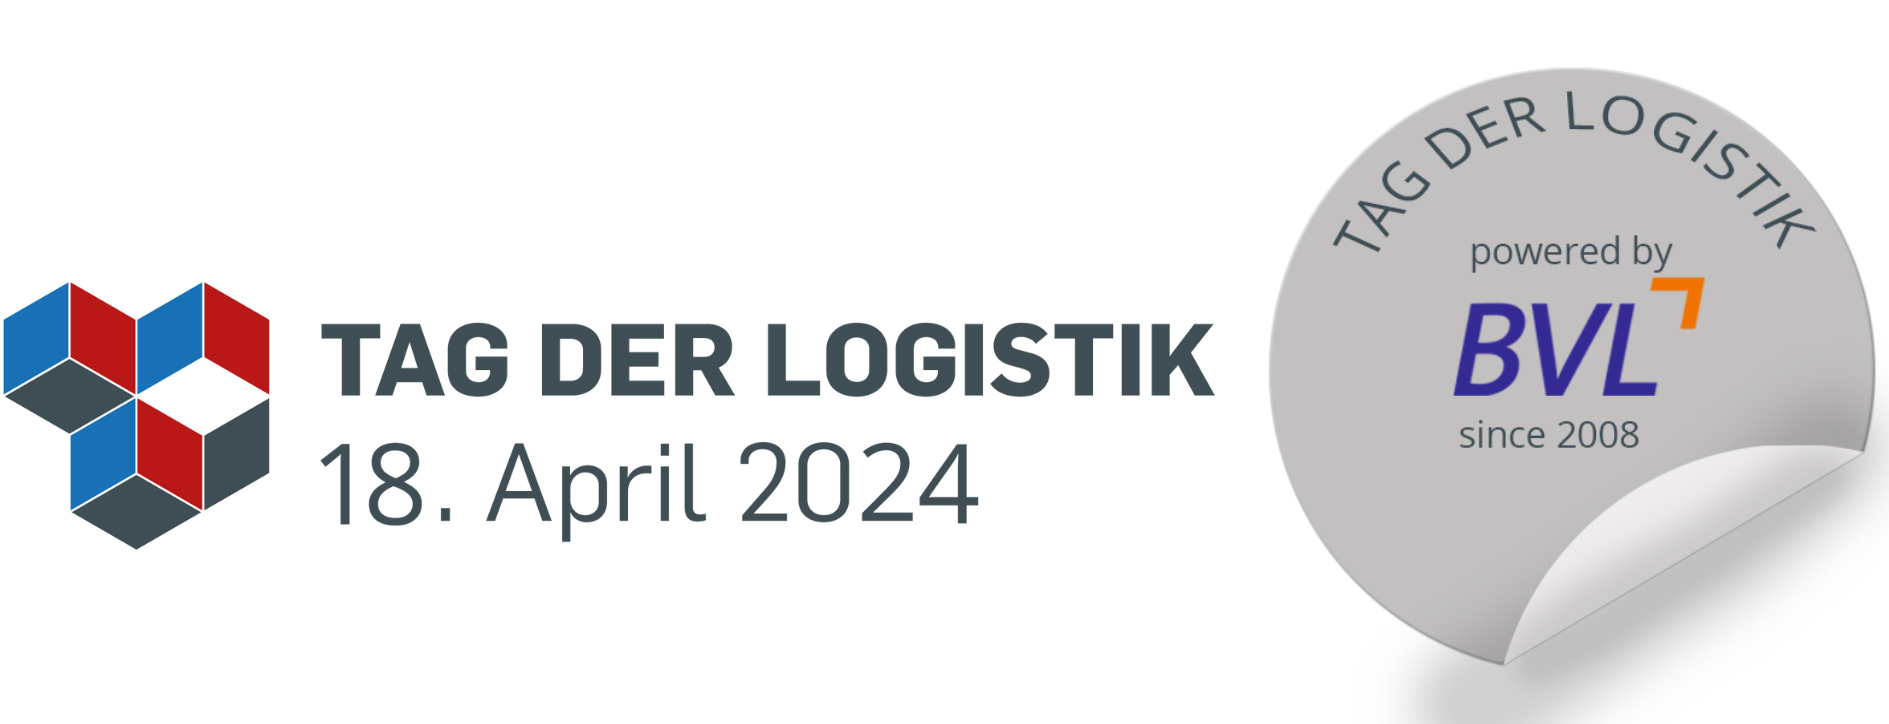 Tag der Logistik 2025